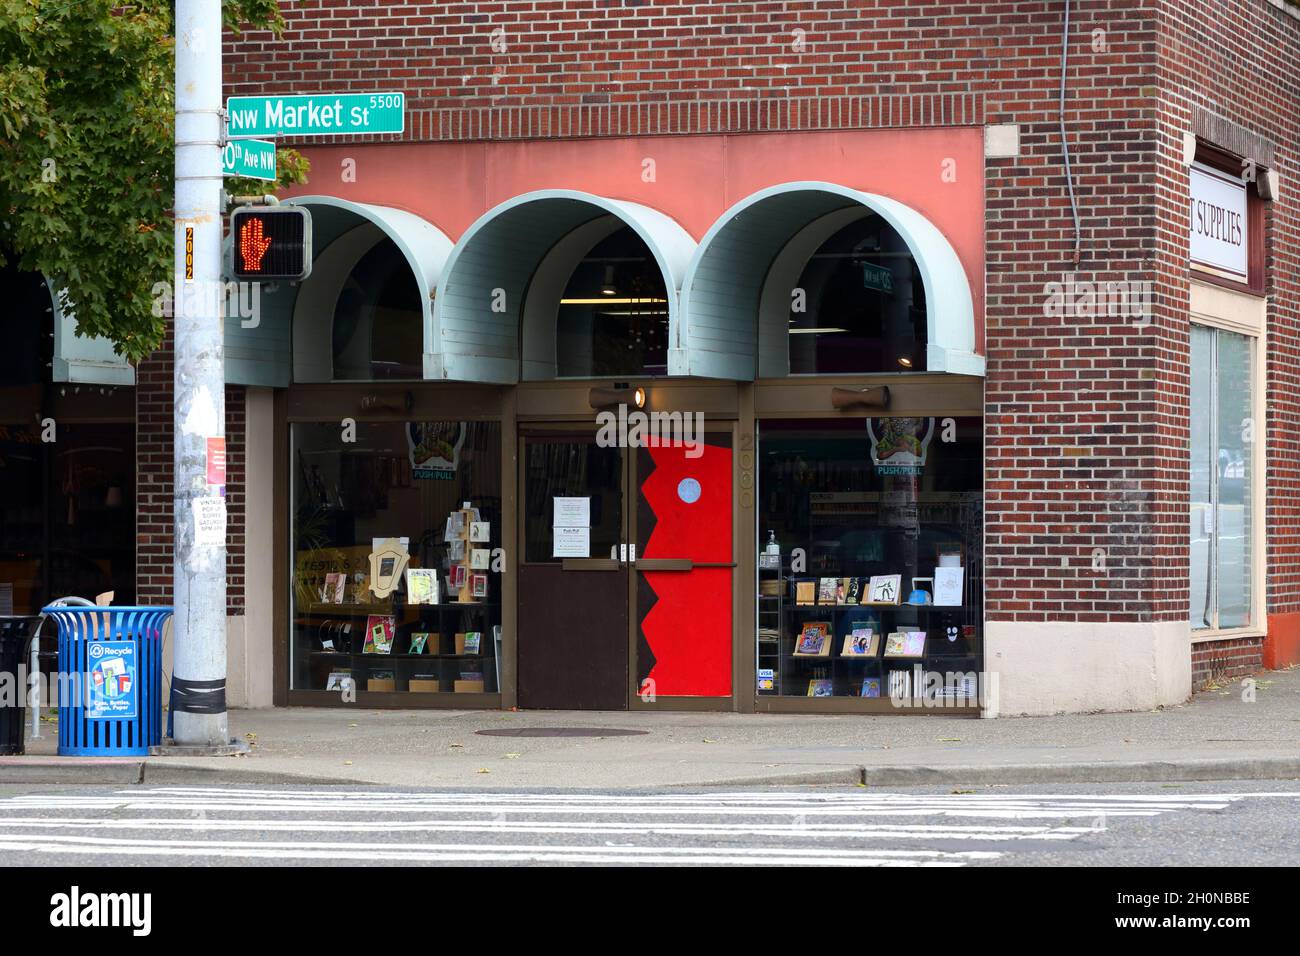 Push/Pull, 2000 NW Market St, Seattle, Washington. Escaparate exterior de una librería de arte subterránea, cómic y tienda de suministros de arte en Ballard. Foto de stock